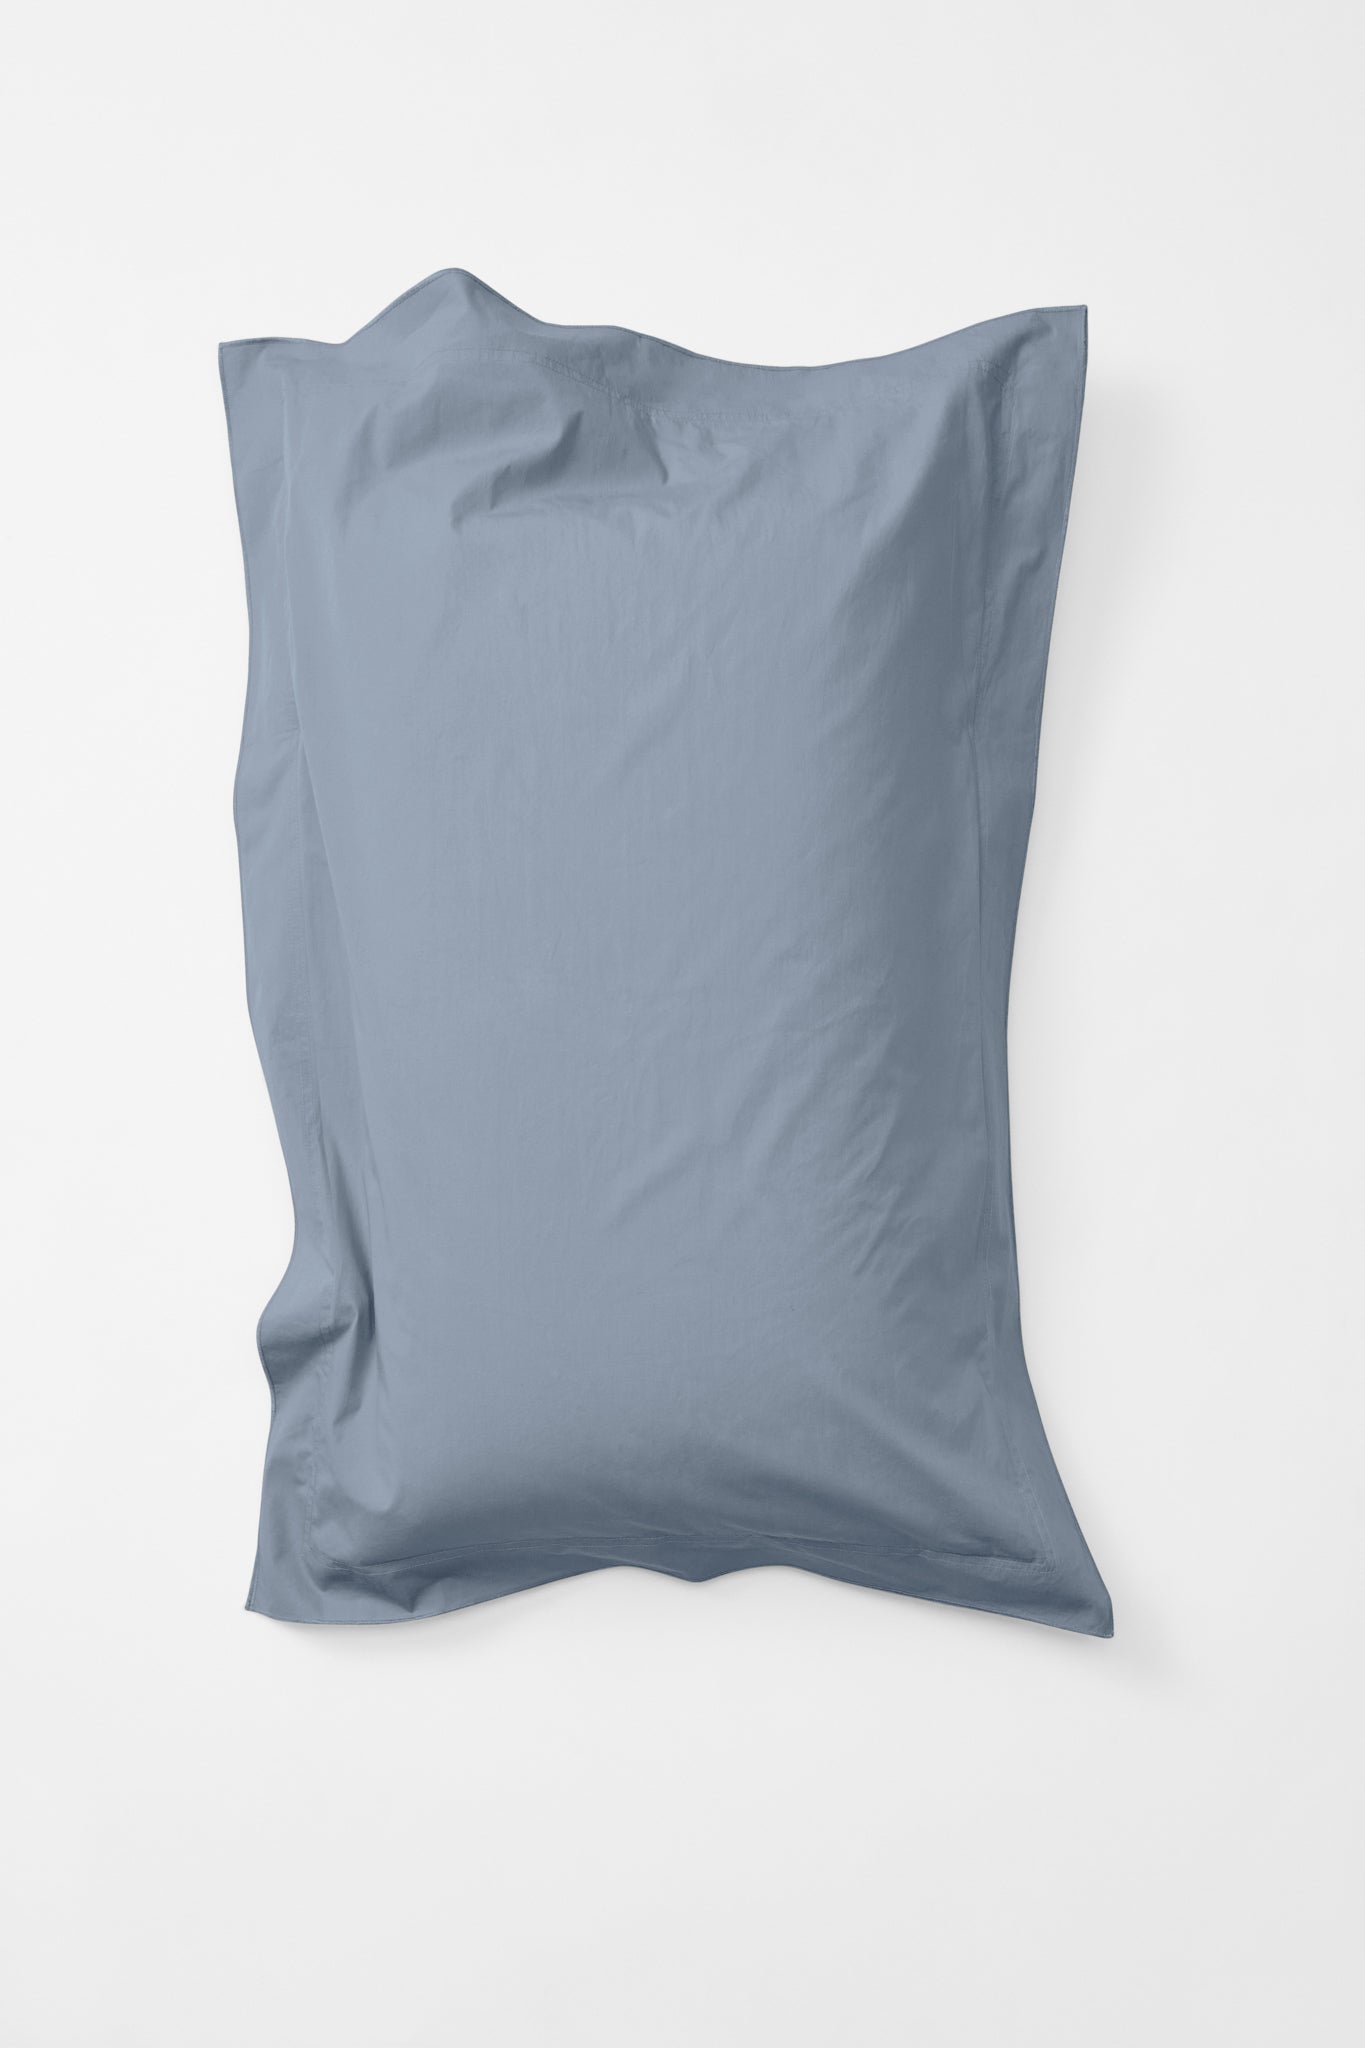 Pillowcase Pair in Half Blue